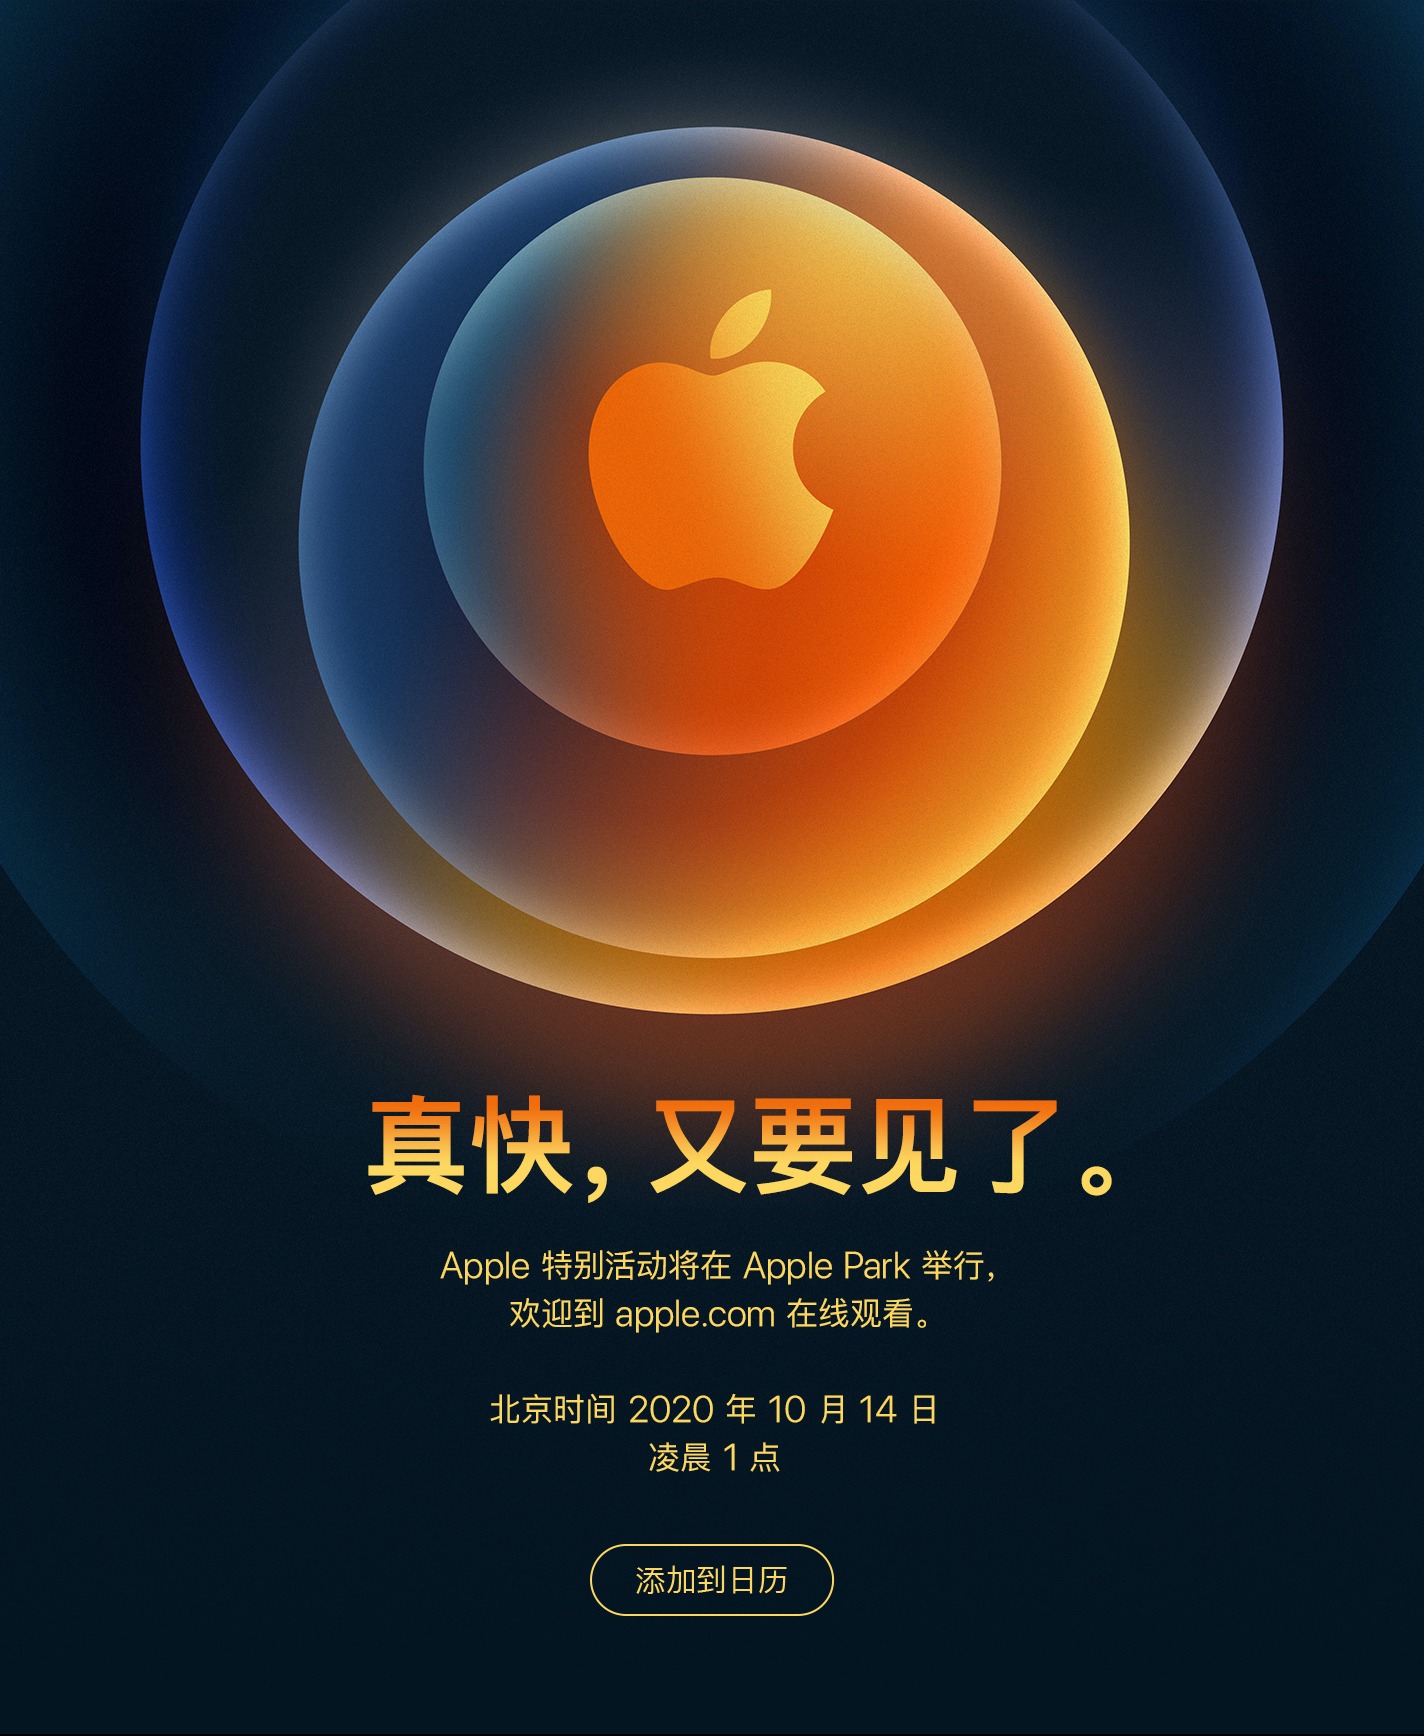 轮到iphone 12登场了?苹果官宣北京时间10月14日举行发布会